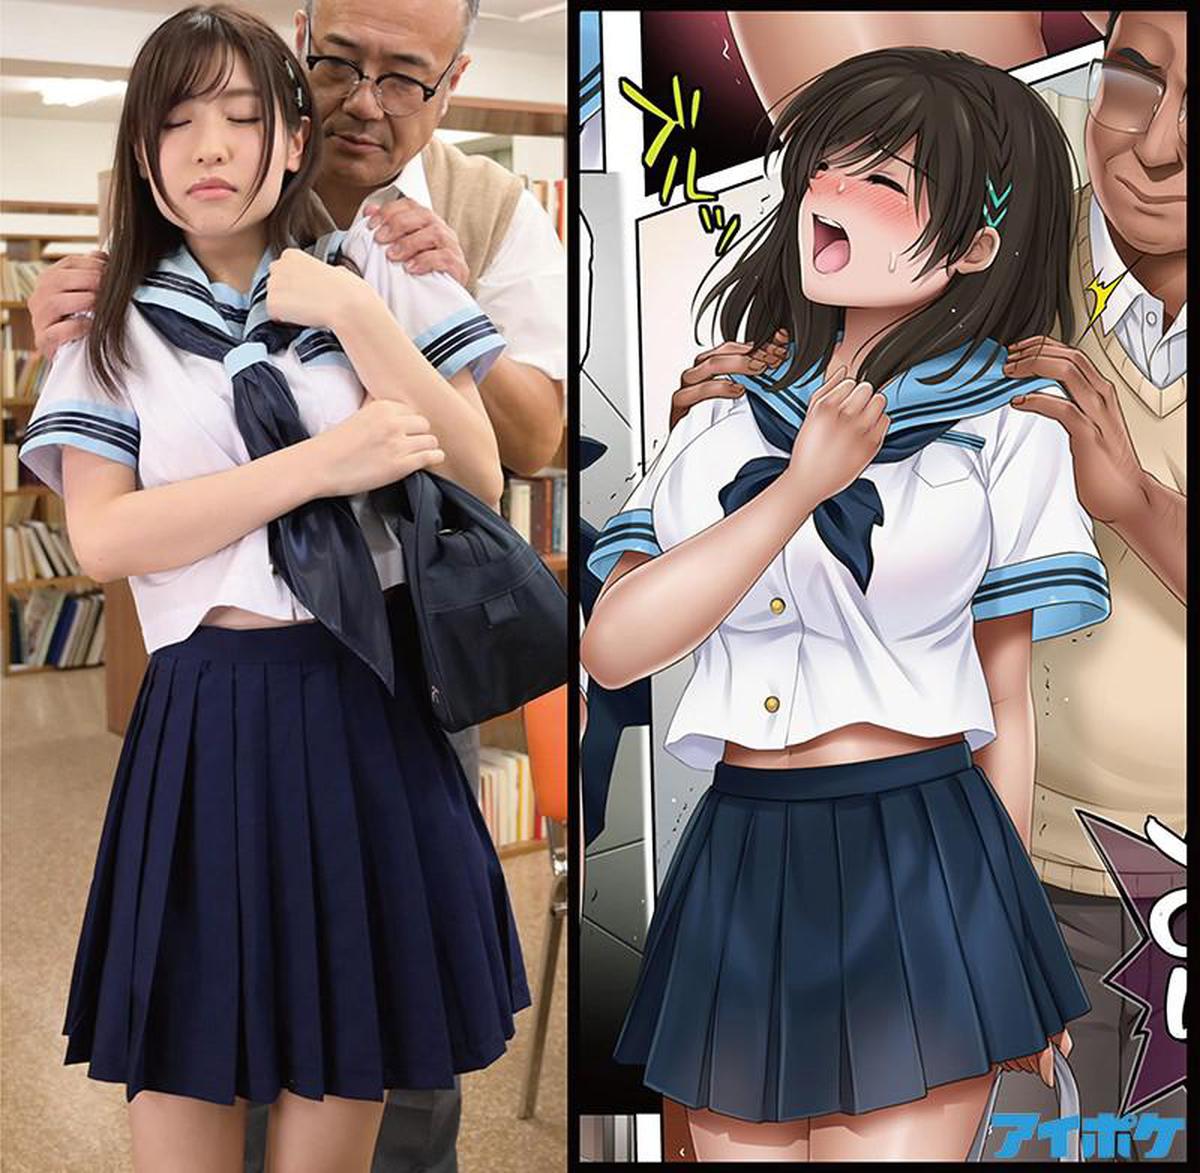 चाइनास सब IPX-674 Yumekautsuka सप्ताह में पहली बार महीने में पहली बार लोकप्रिय douujin कॉमिक एक S-क्लास सुपर सिंगल अभिनेत्री के साथ लाइव-एक्शन है! !! सकुरा स्काई पीच